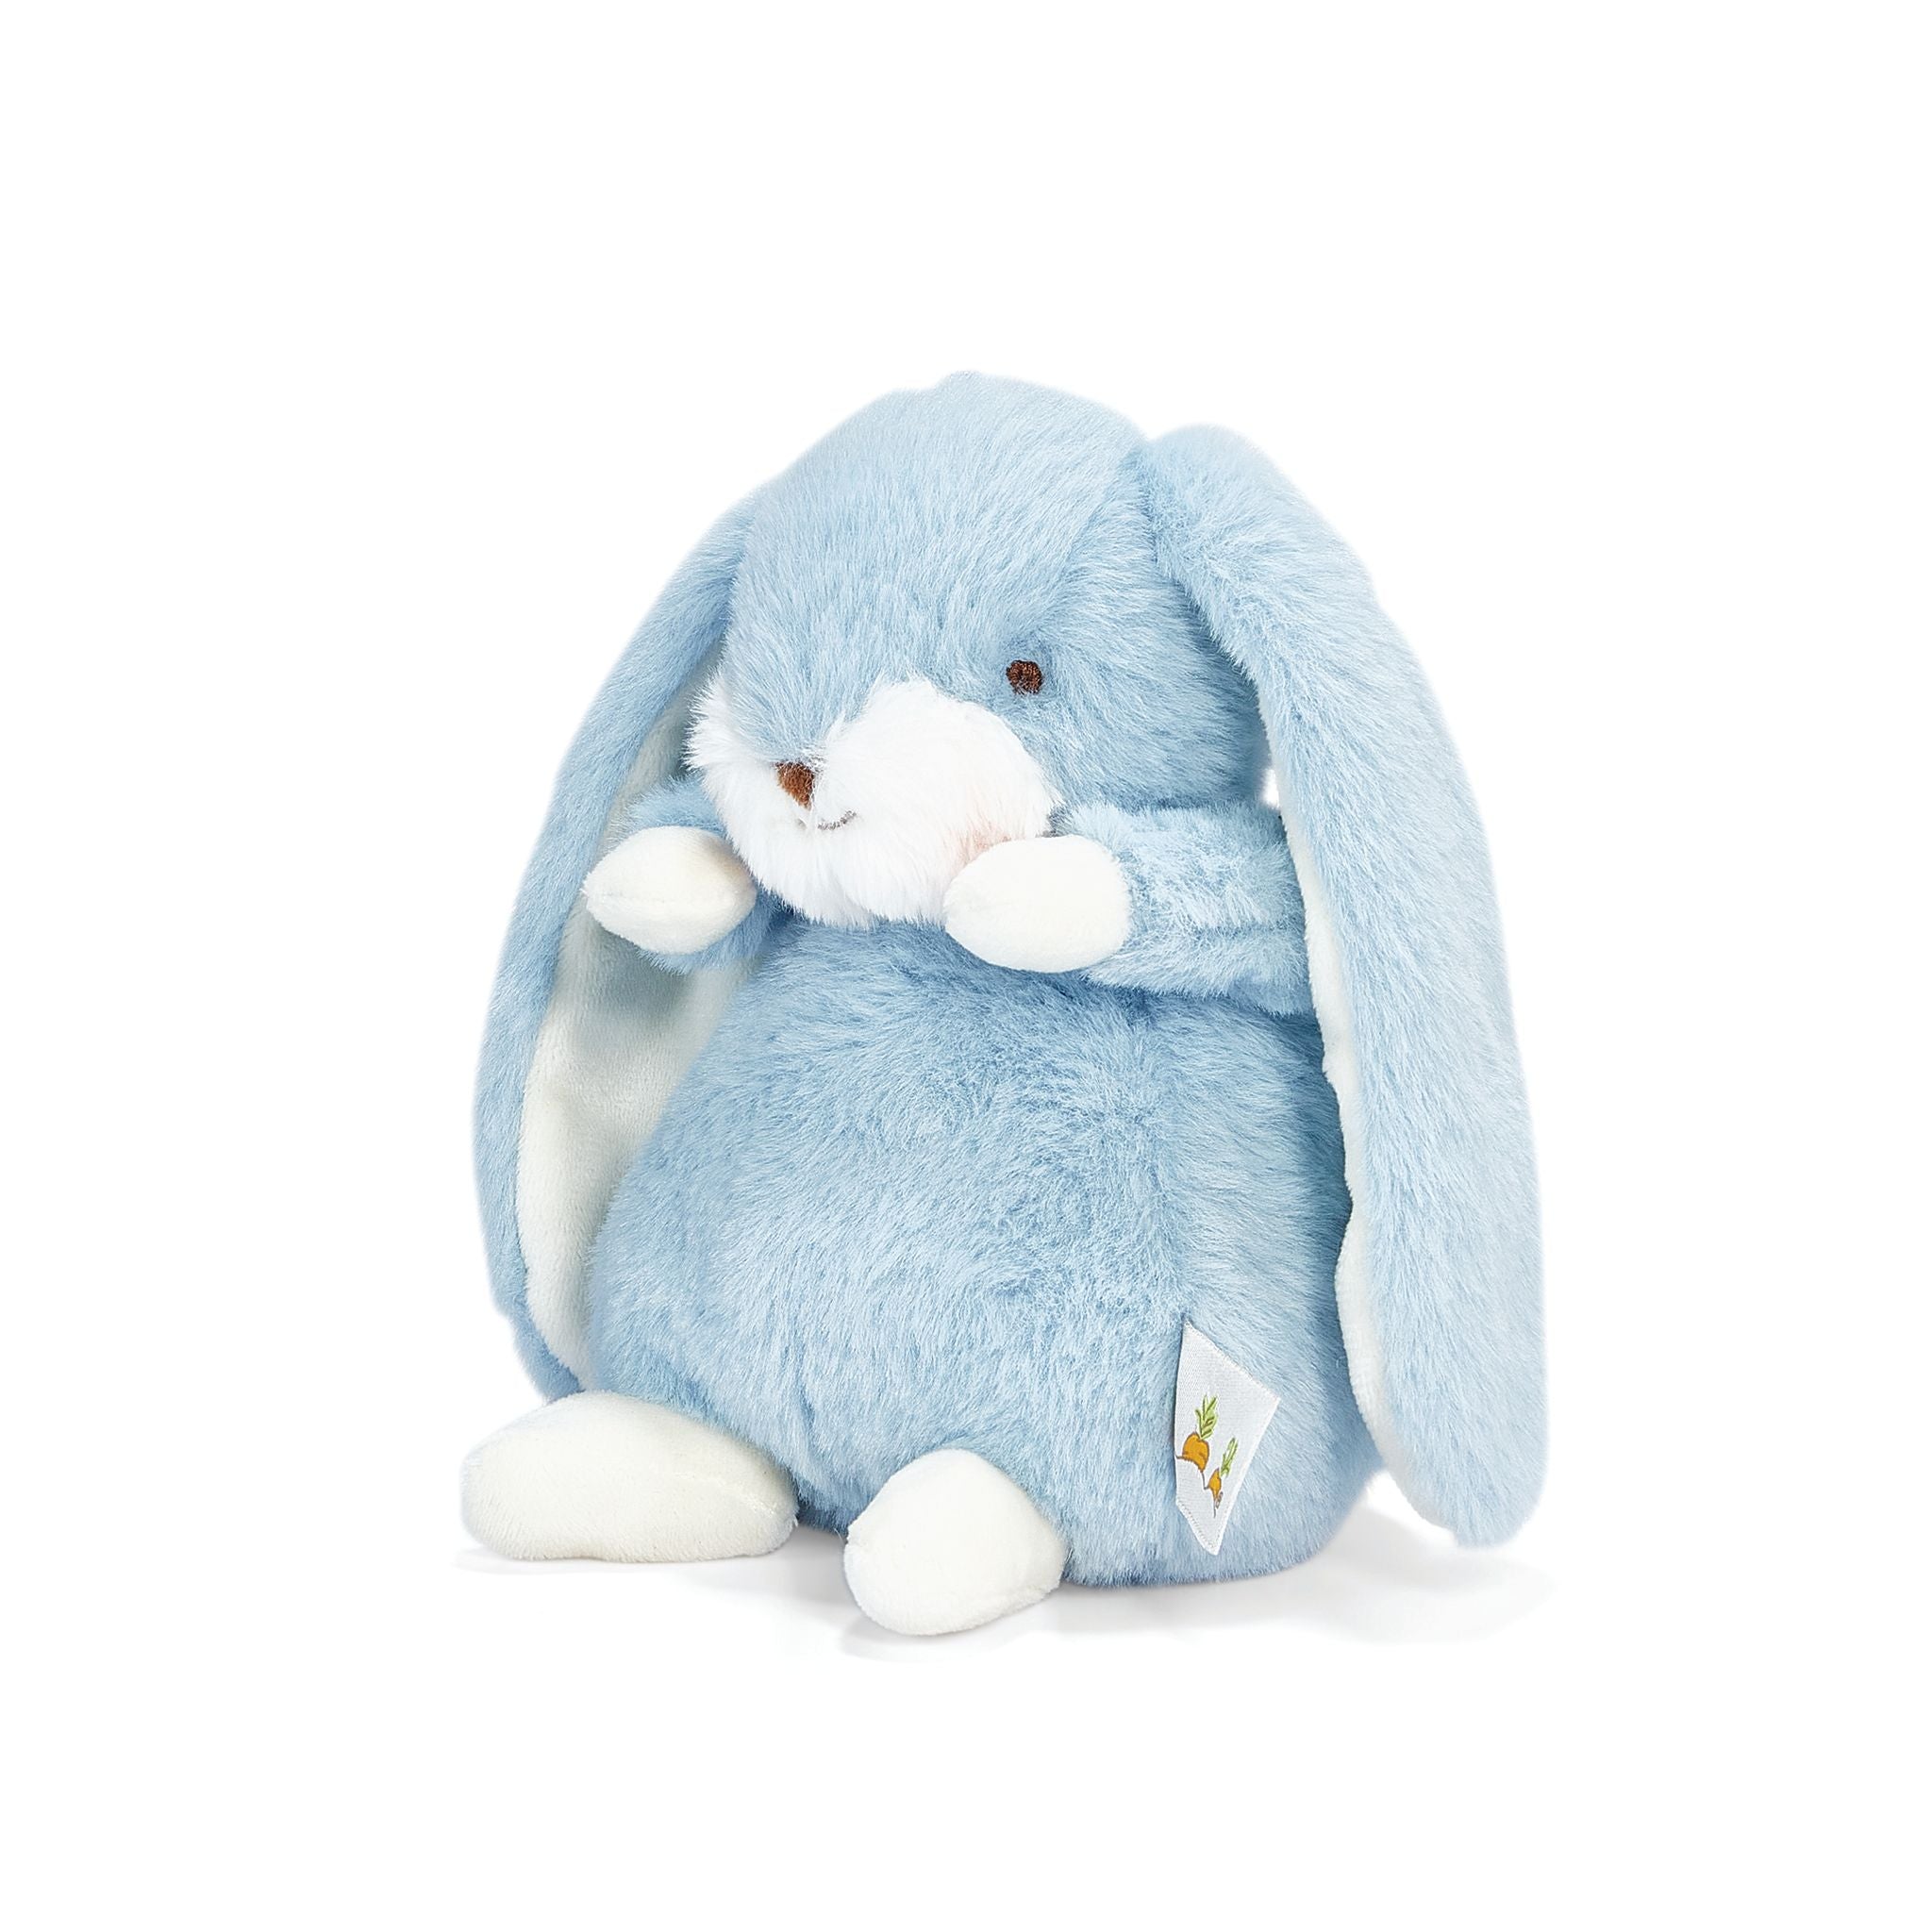 190312: Tiny Nibble 8" Bunny - Maui Blue